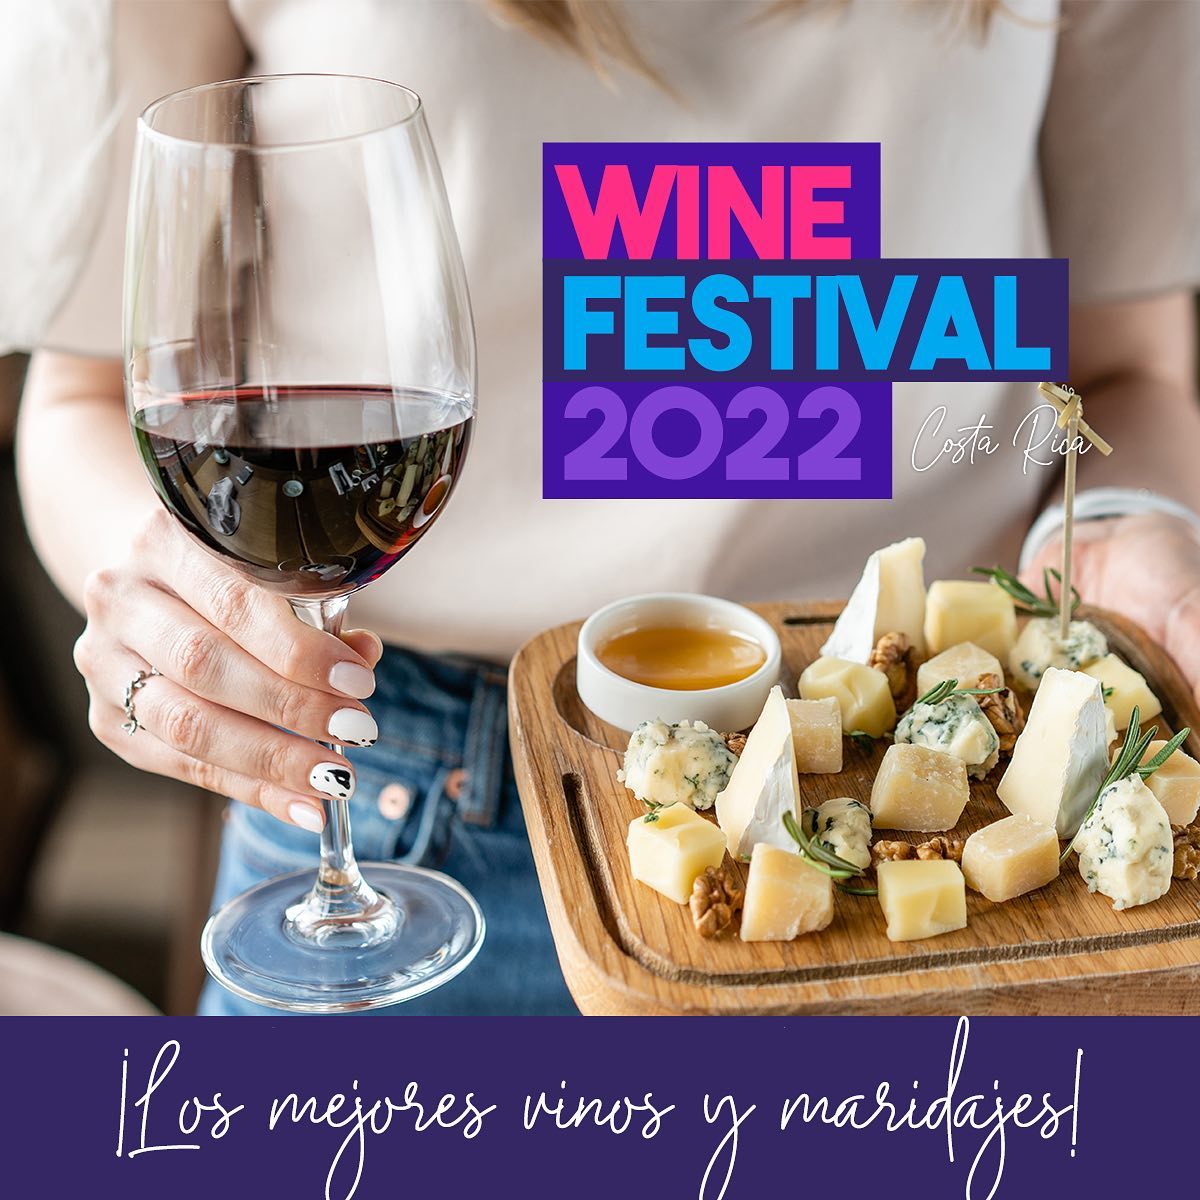 Regresa a Costa Rica el “Wine festival” el evento más grande sobre vino en el país